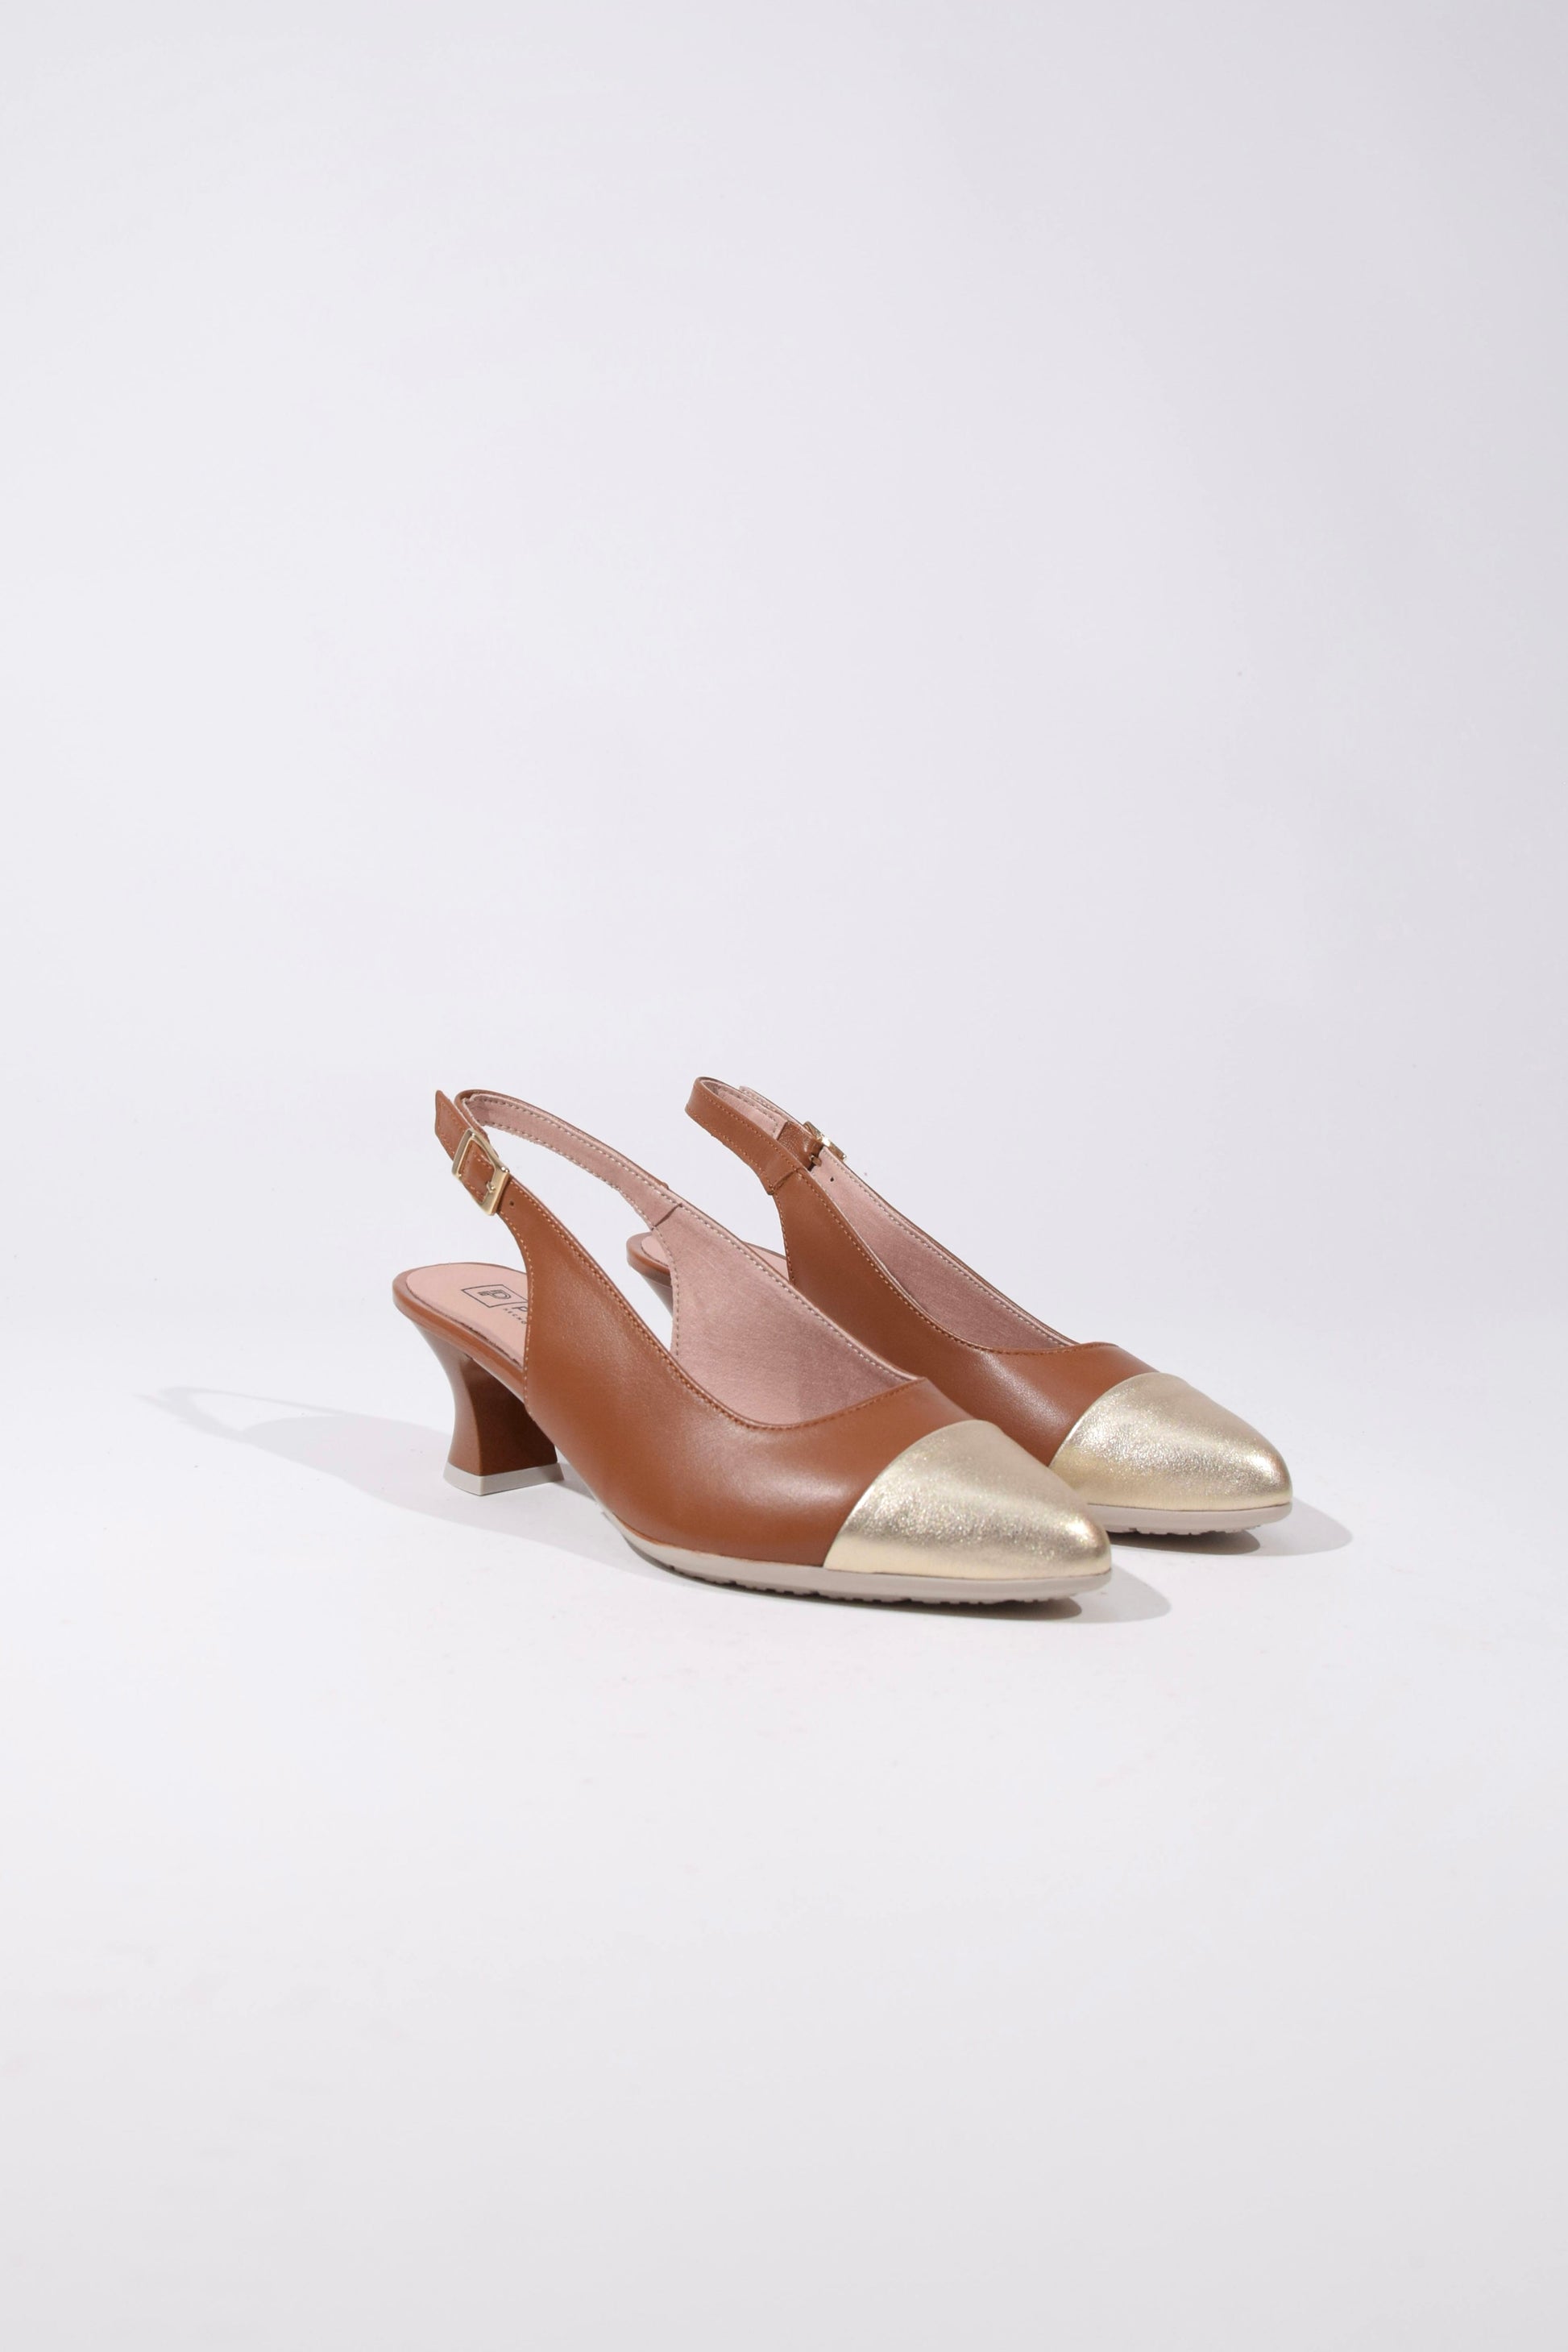 Sandalo in pelle marrone con tacco kitten heel - Unico Officina Di tendenza